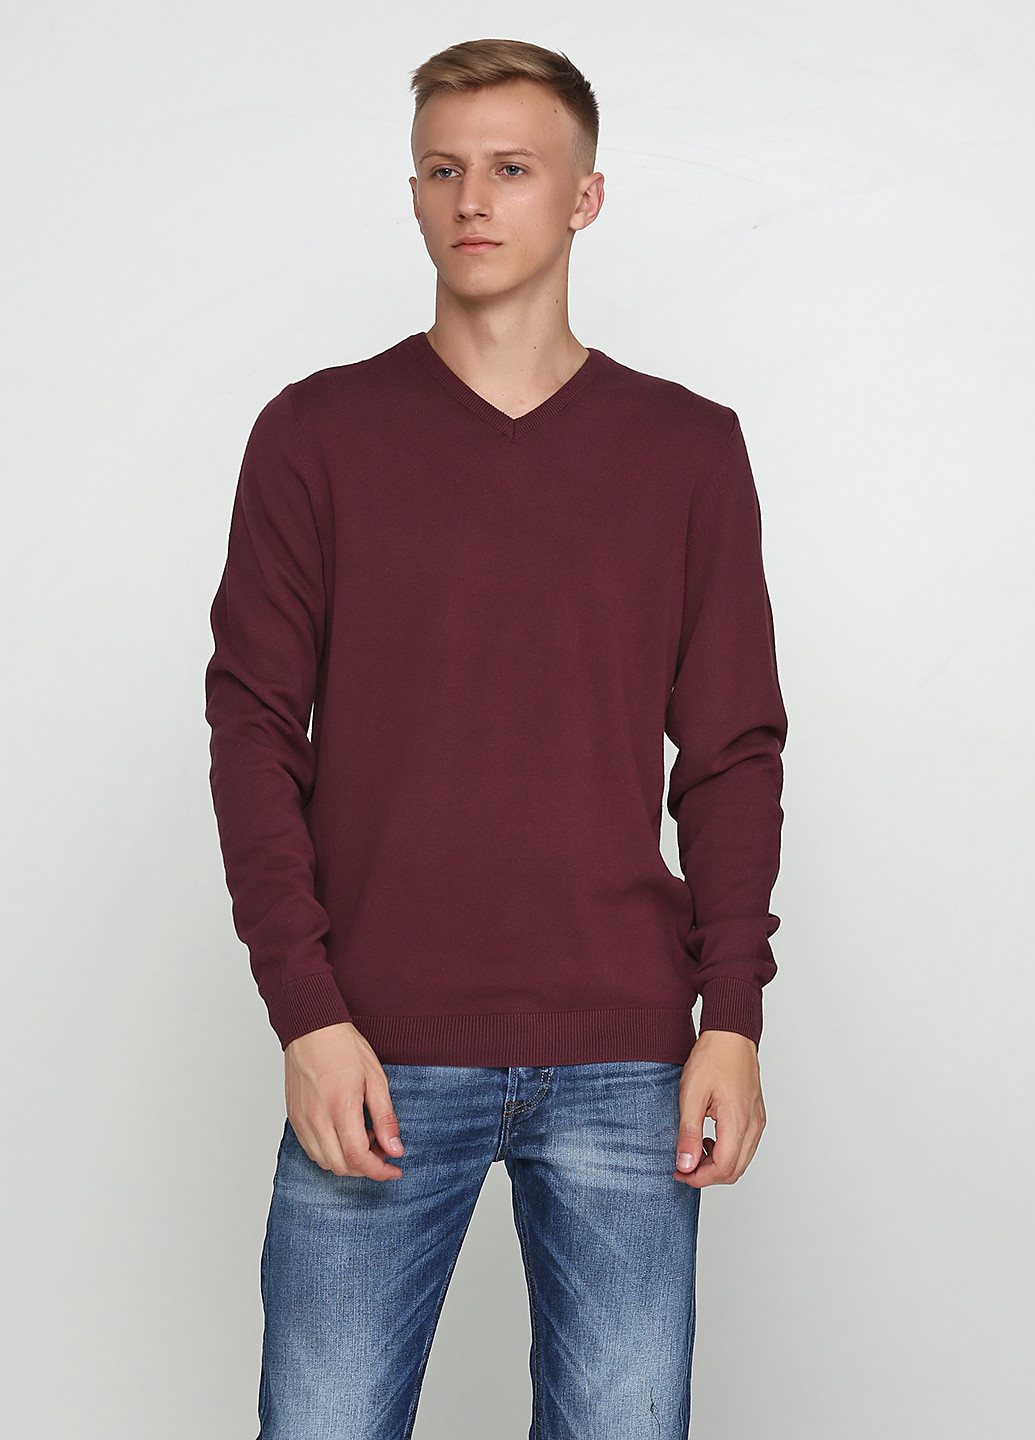 Сиреневый демисезонный пуловер пуловер Jean Pascal